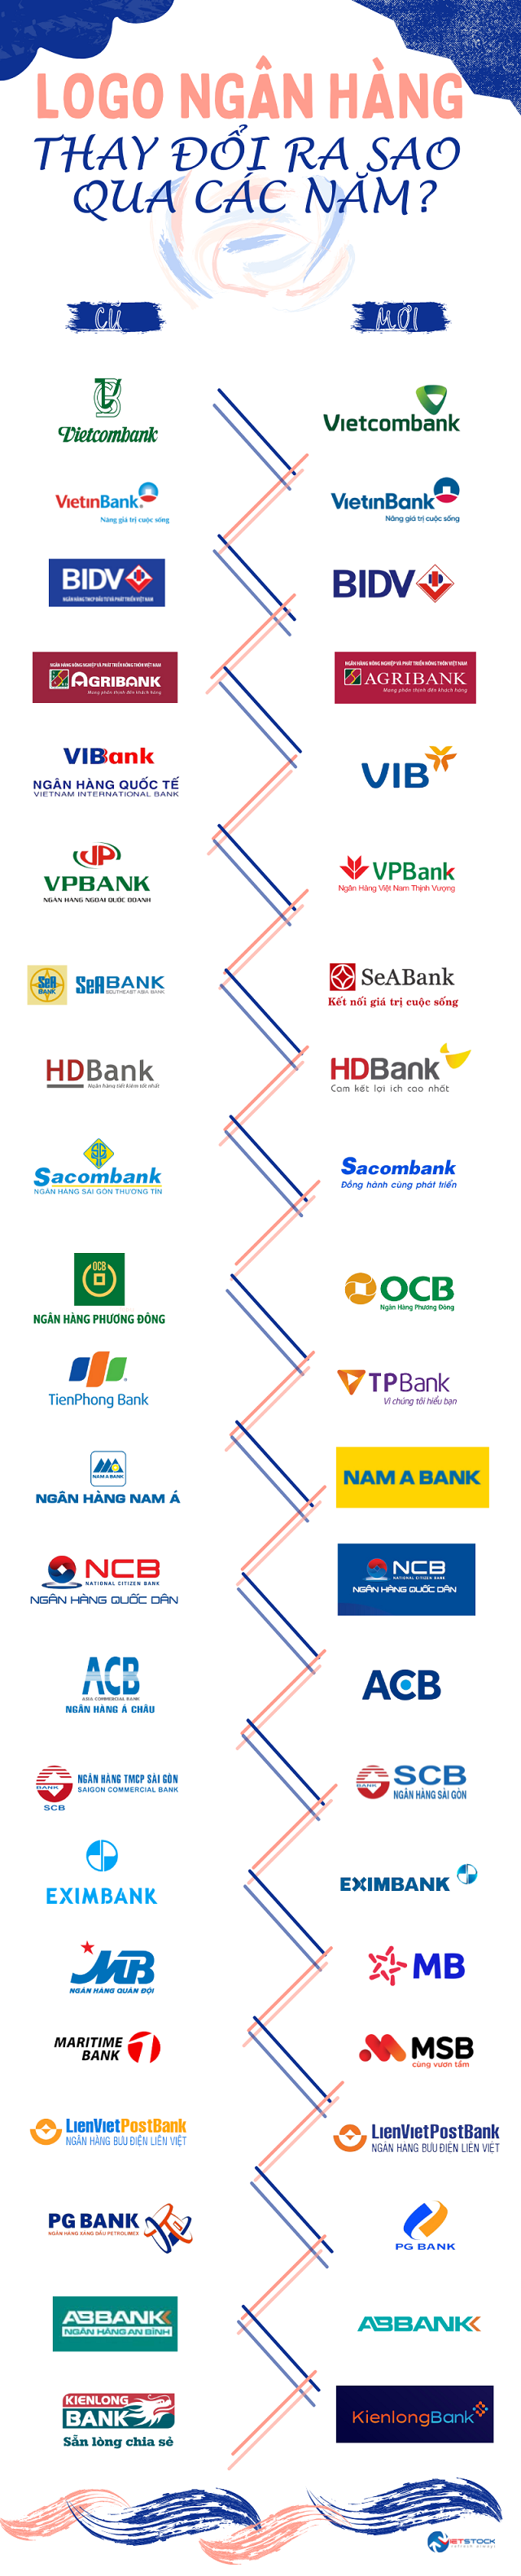 Infographics] Nhận diện thương hiệu ngân hàng thay đổi ra sao? | Fili